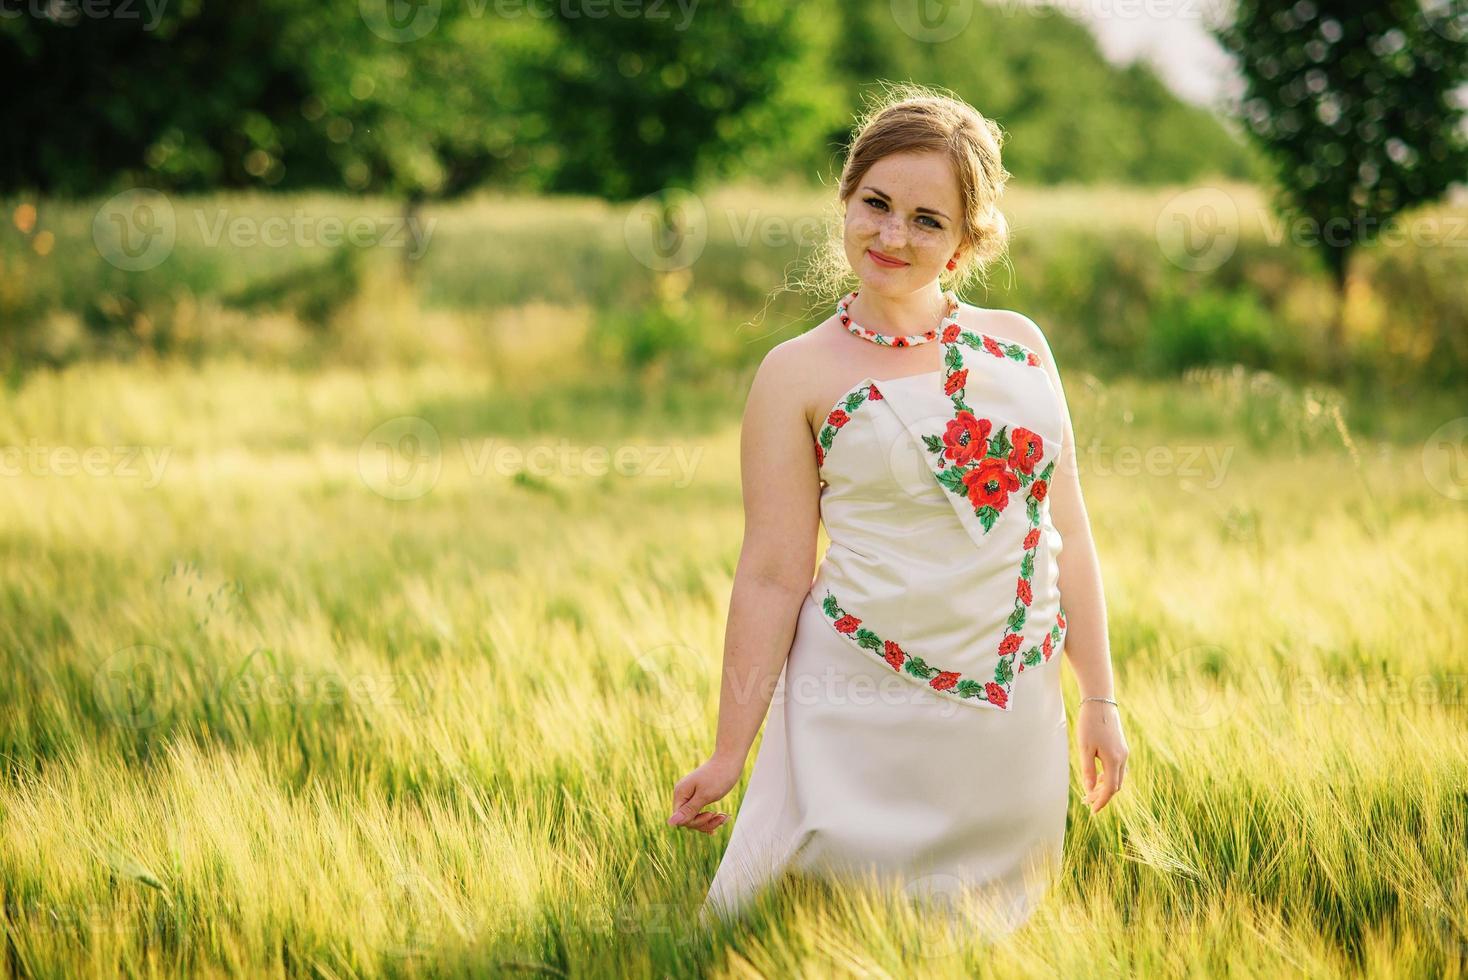 jovem no vestido nacional ucraniano posou no campo de grinalda. foto